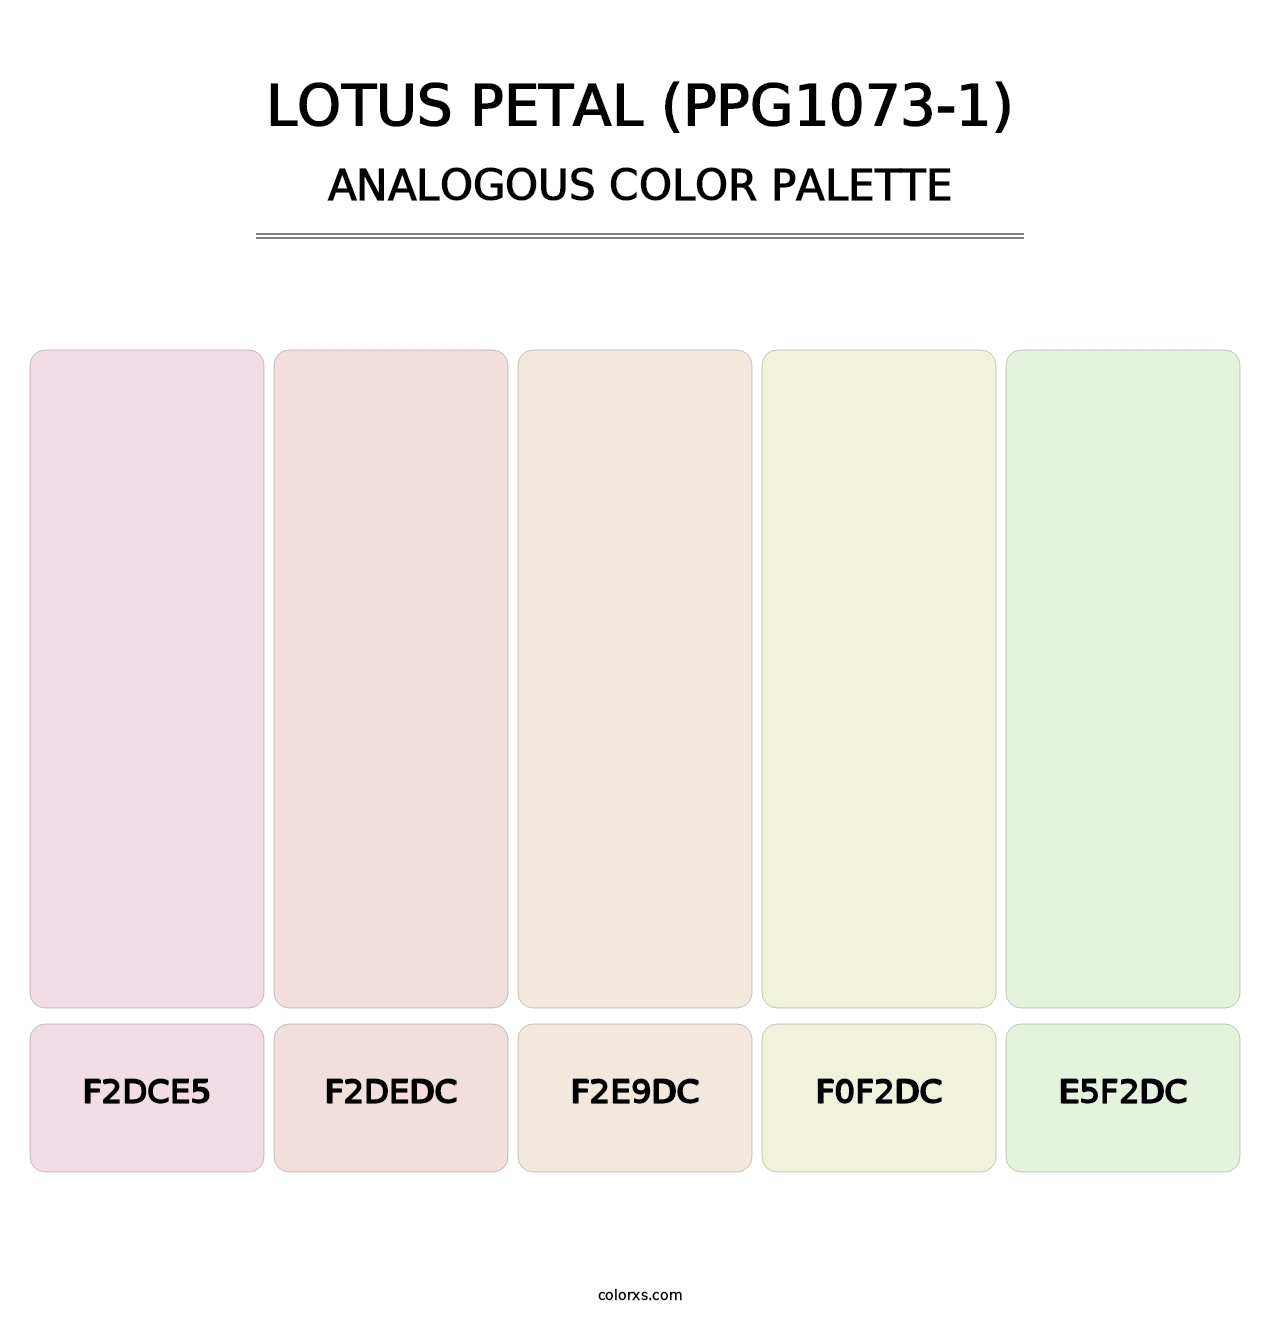 Lotus Petal (PPG1073-1) - Analogous Color Palette